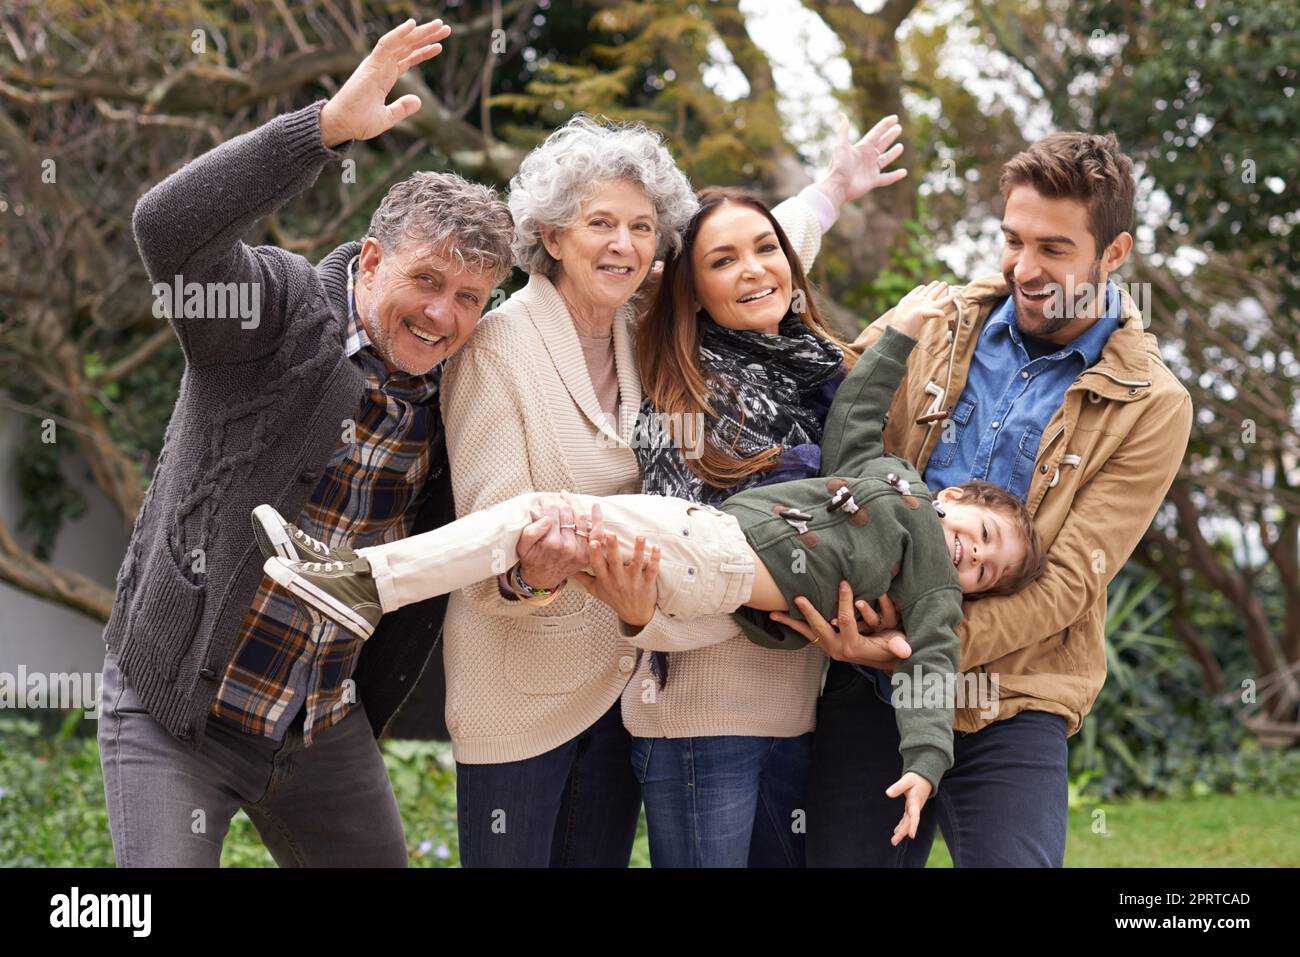 Familie über alles. Porträt einer glücklichen Familie mit mehreren Generationen, die Spaß im Freien hat. Stockfoto